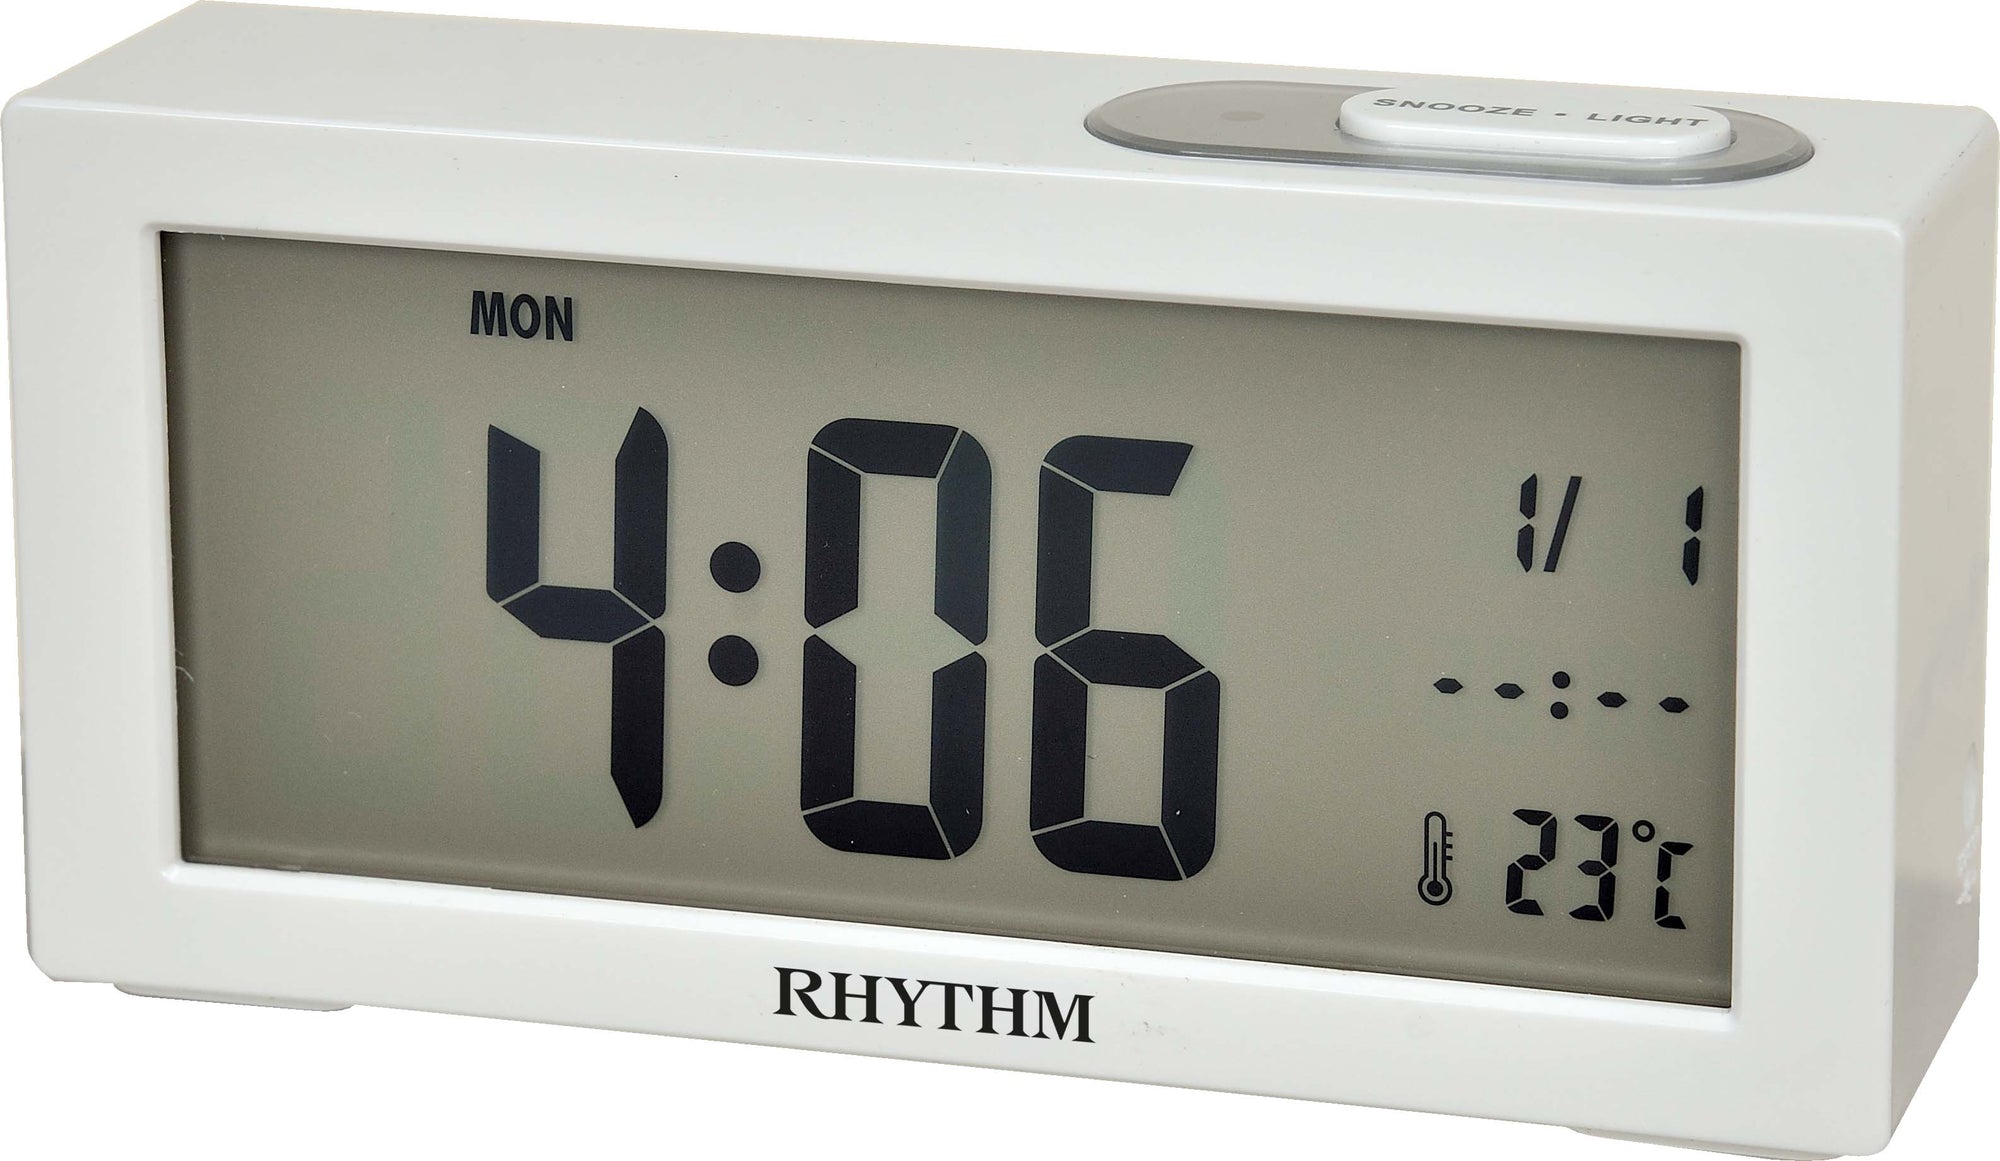 Rhythm Digital Beep alarm clock LCT092NR03